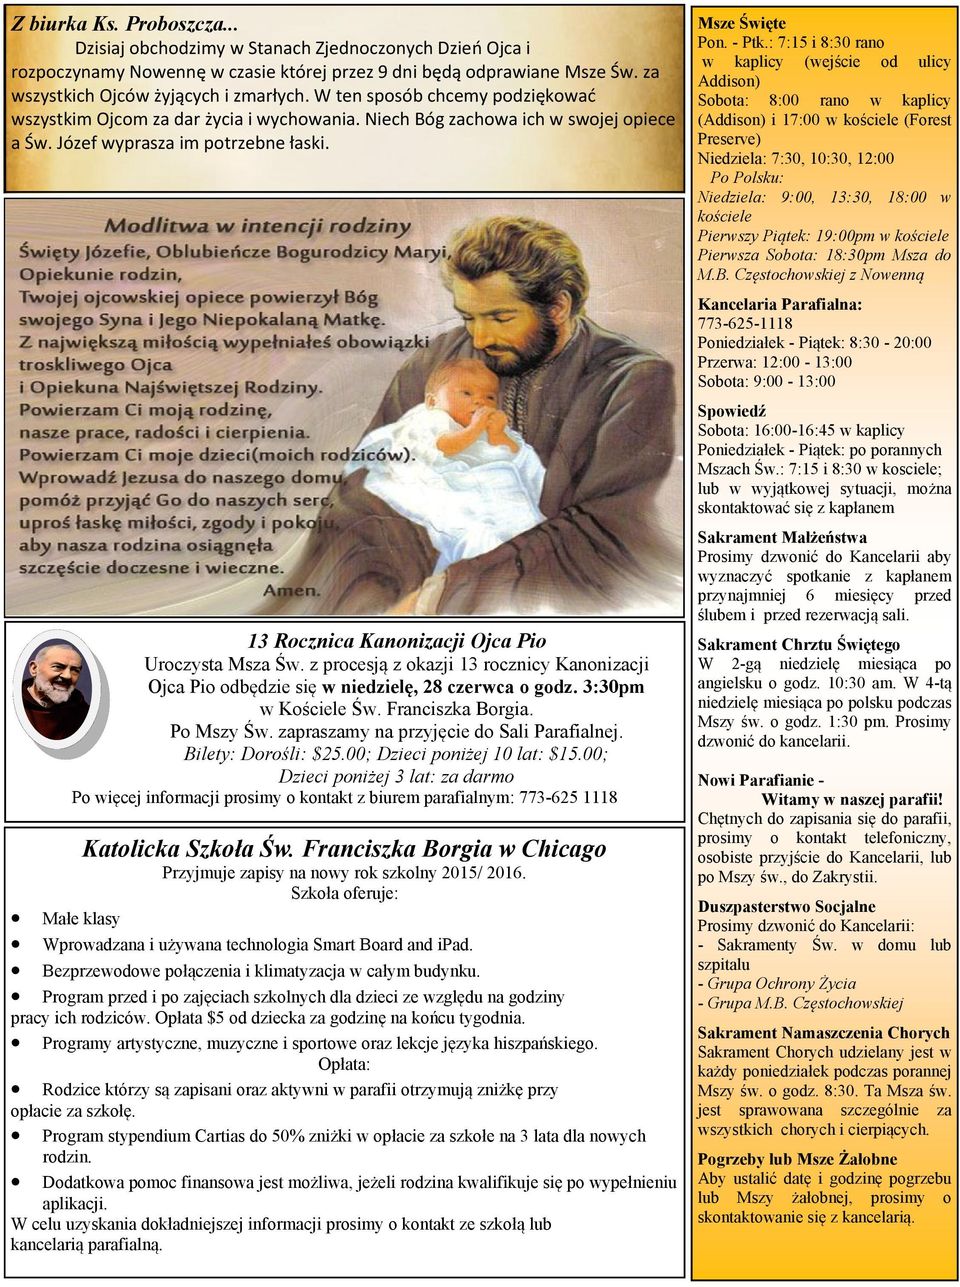 13 Rocznica Kanonizacji Ojca Pio Uroczysta Msza Św. z procesją z okazji 13 rocznicy Kanonizacji Ojca Pio odbędzie się w niedzielę, 28 czerwca o godz. 3:30pm w Kościele Św. Franciszka Borgia.